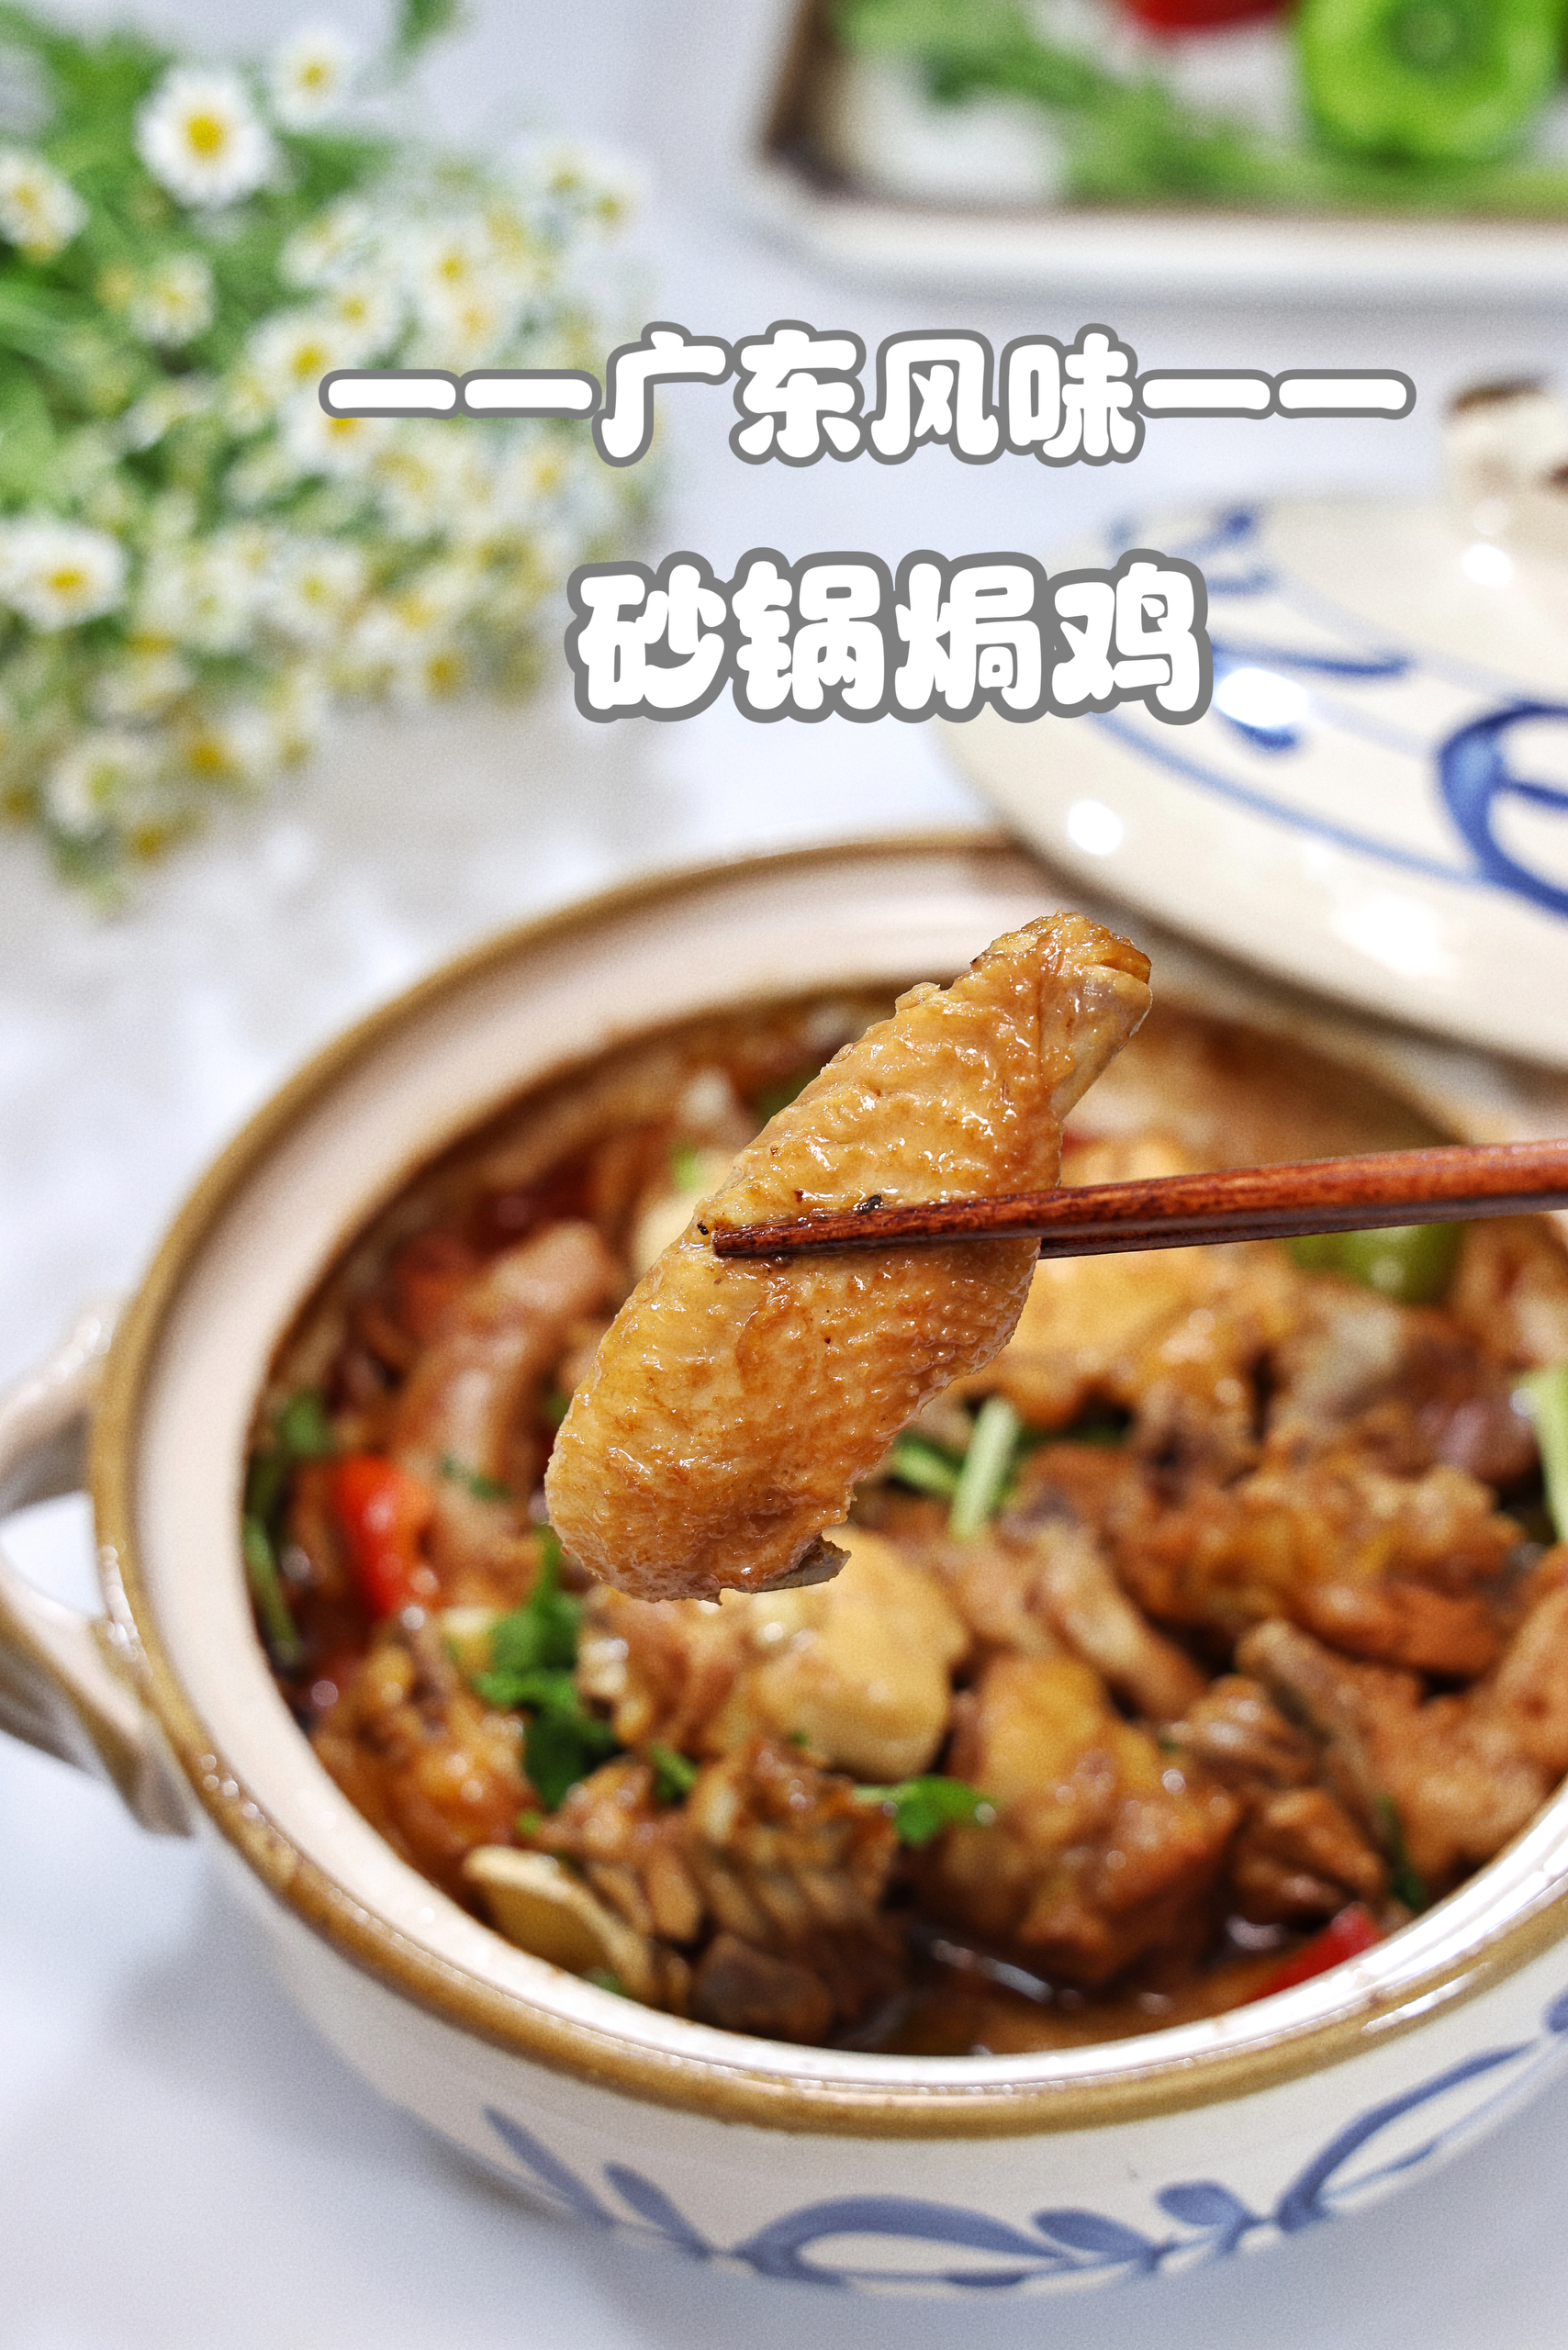 砂锅焗鸡💕不加一滴水的广东风味